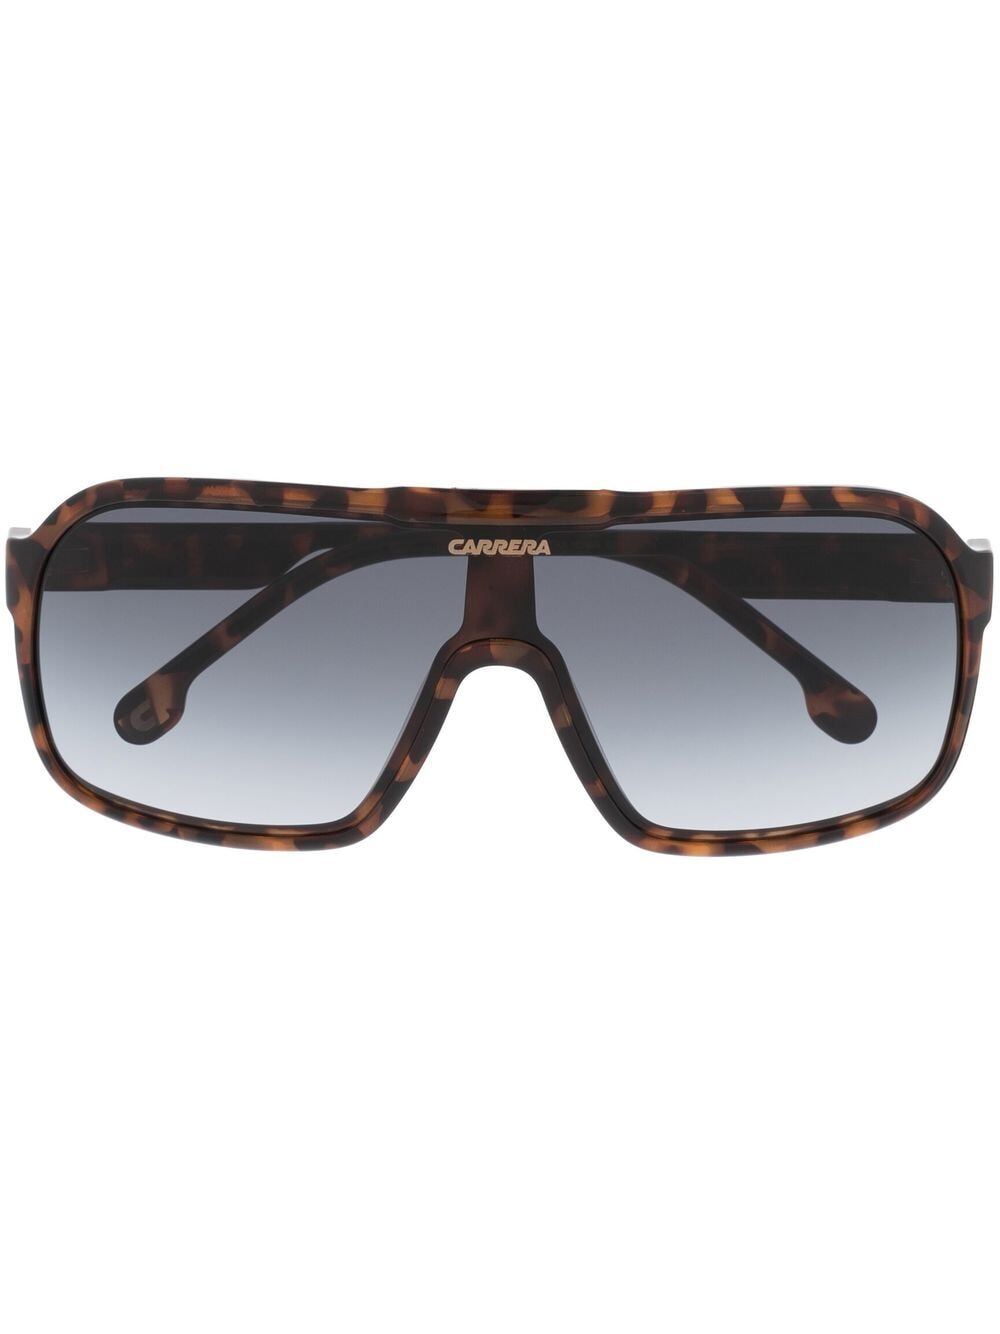 Carrera square-shape sunglasses - Brown